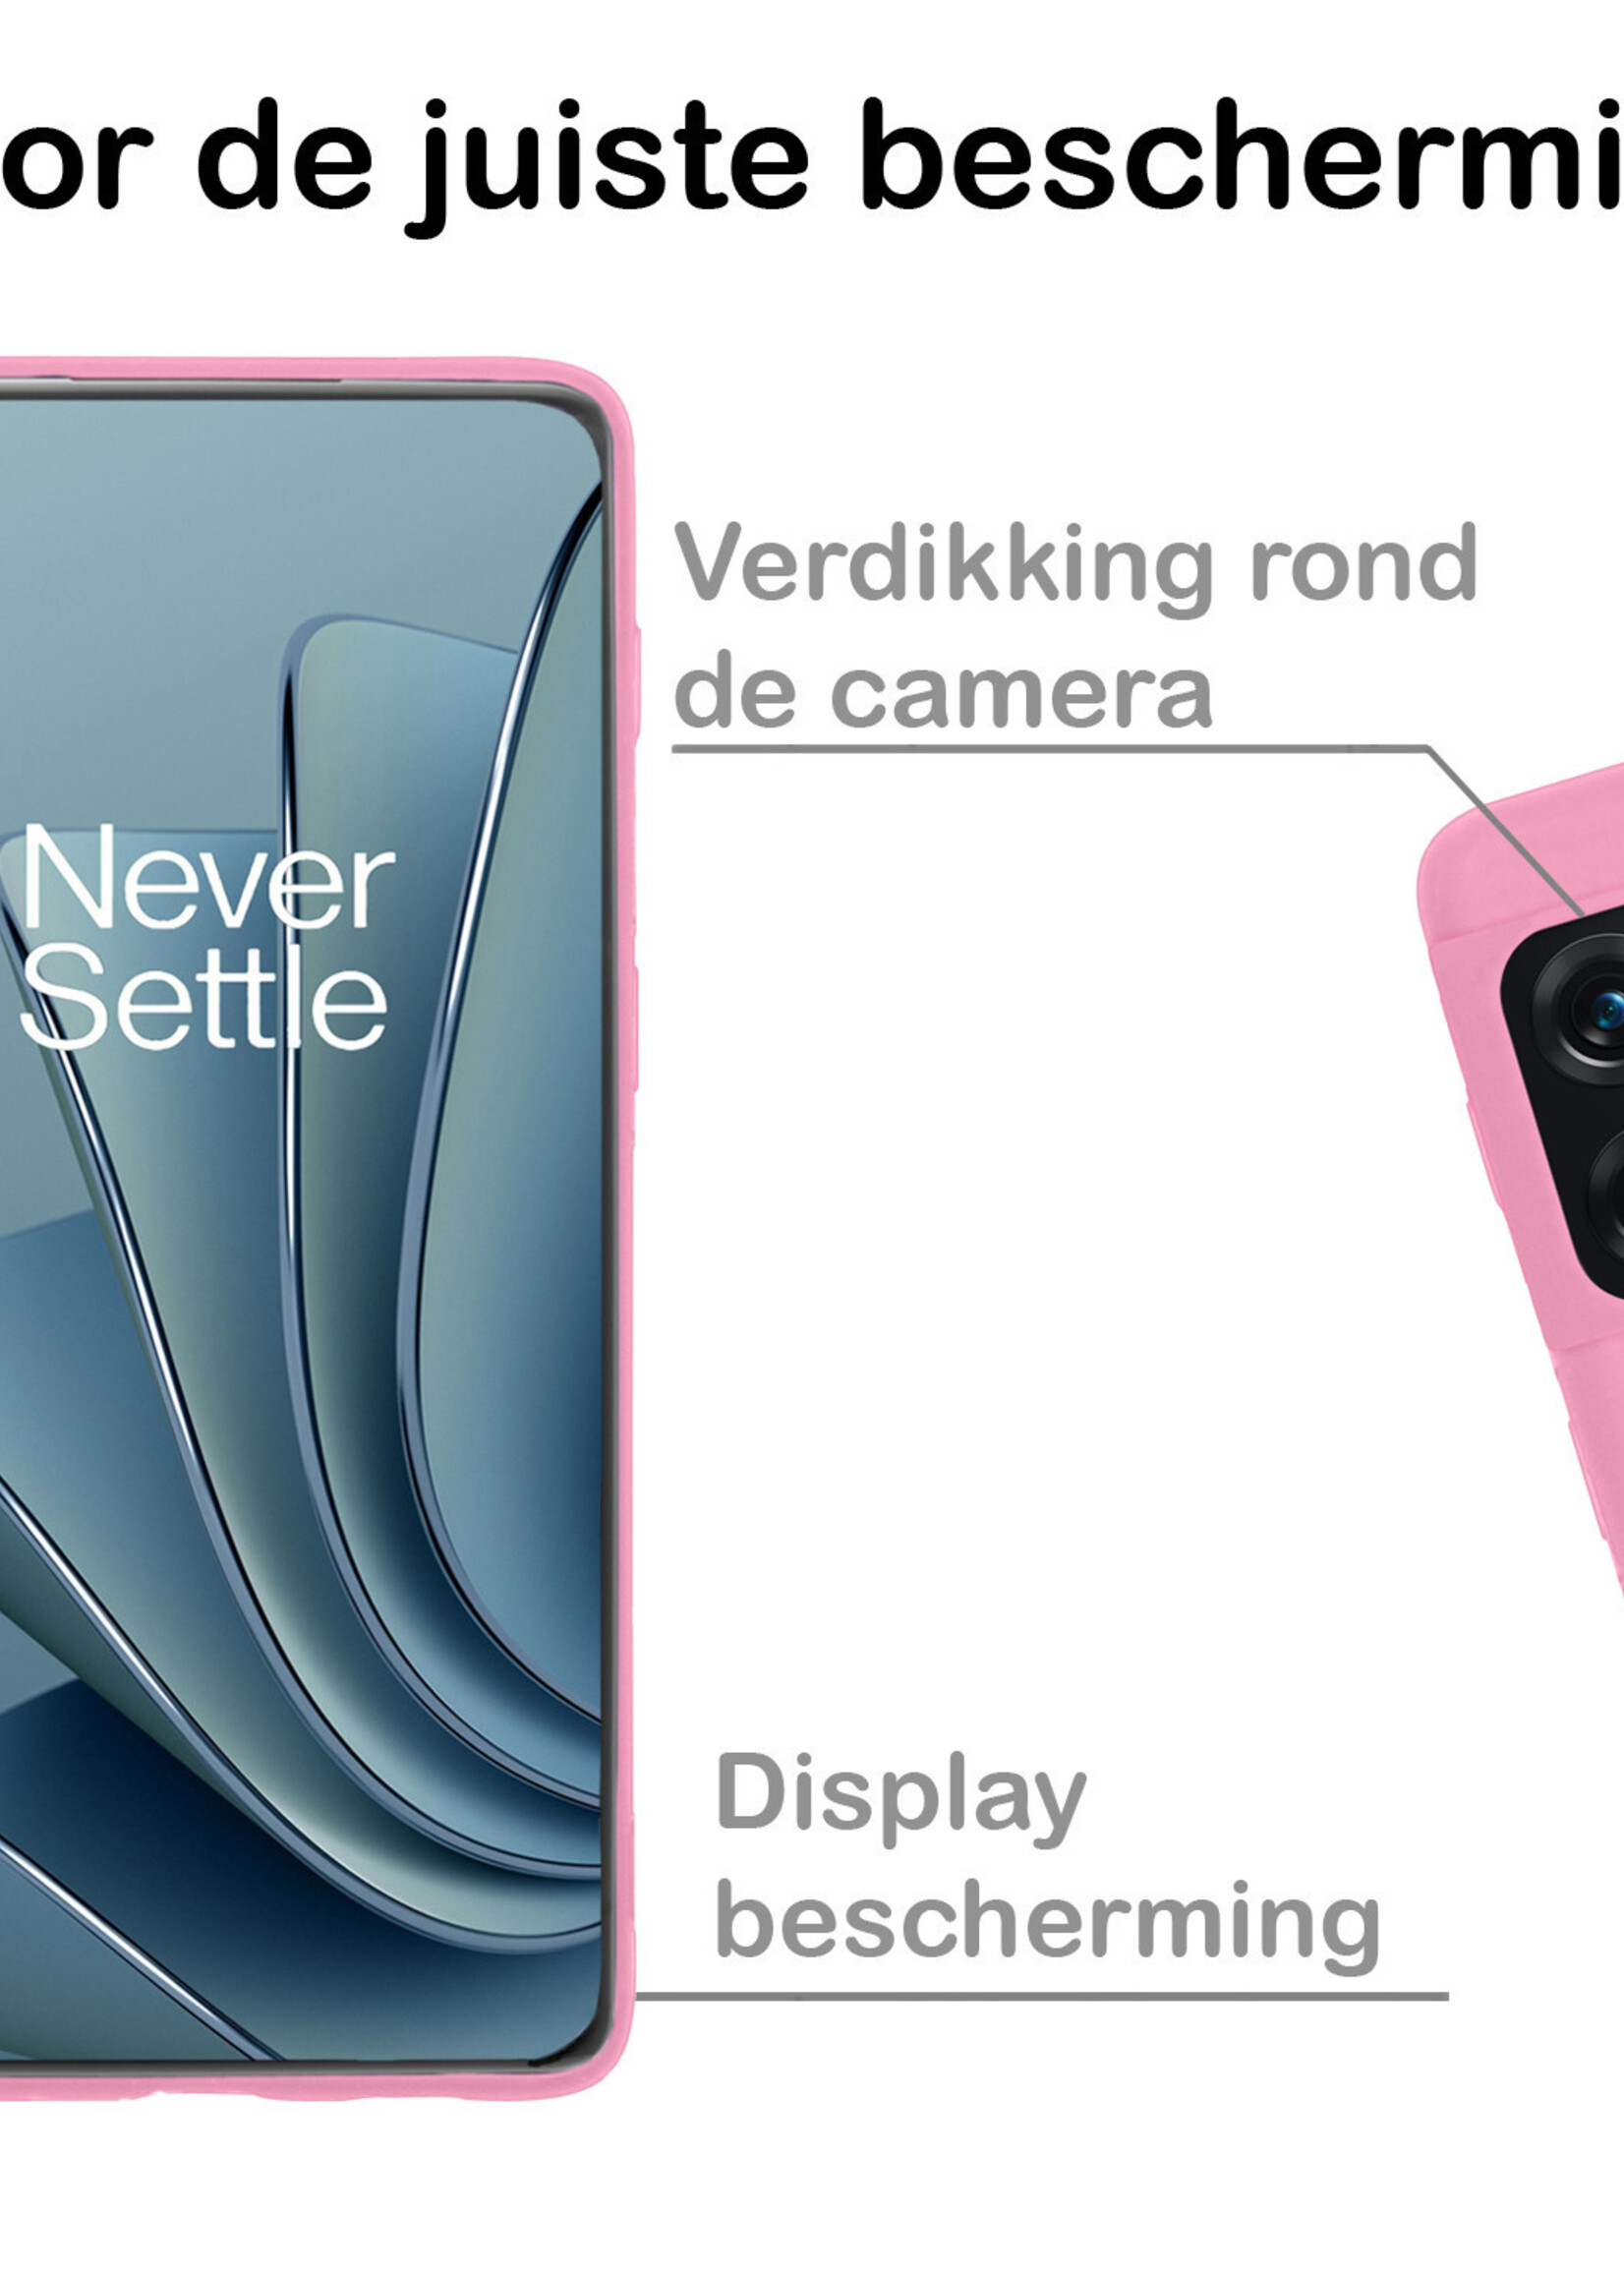 BTH Hoesje Geschikt voor OnePlus 10 Pro Hoesje Siliconen Case Hoes - Hoes Geschikt voor OnePlus 10 Pro Hoes Cover Case - Lichtroze - 2 PACK